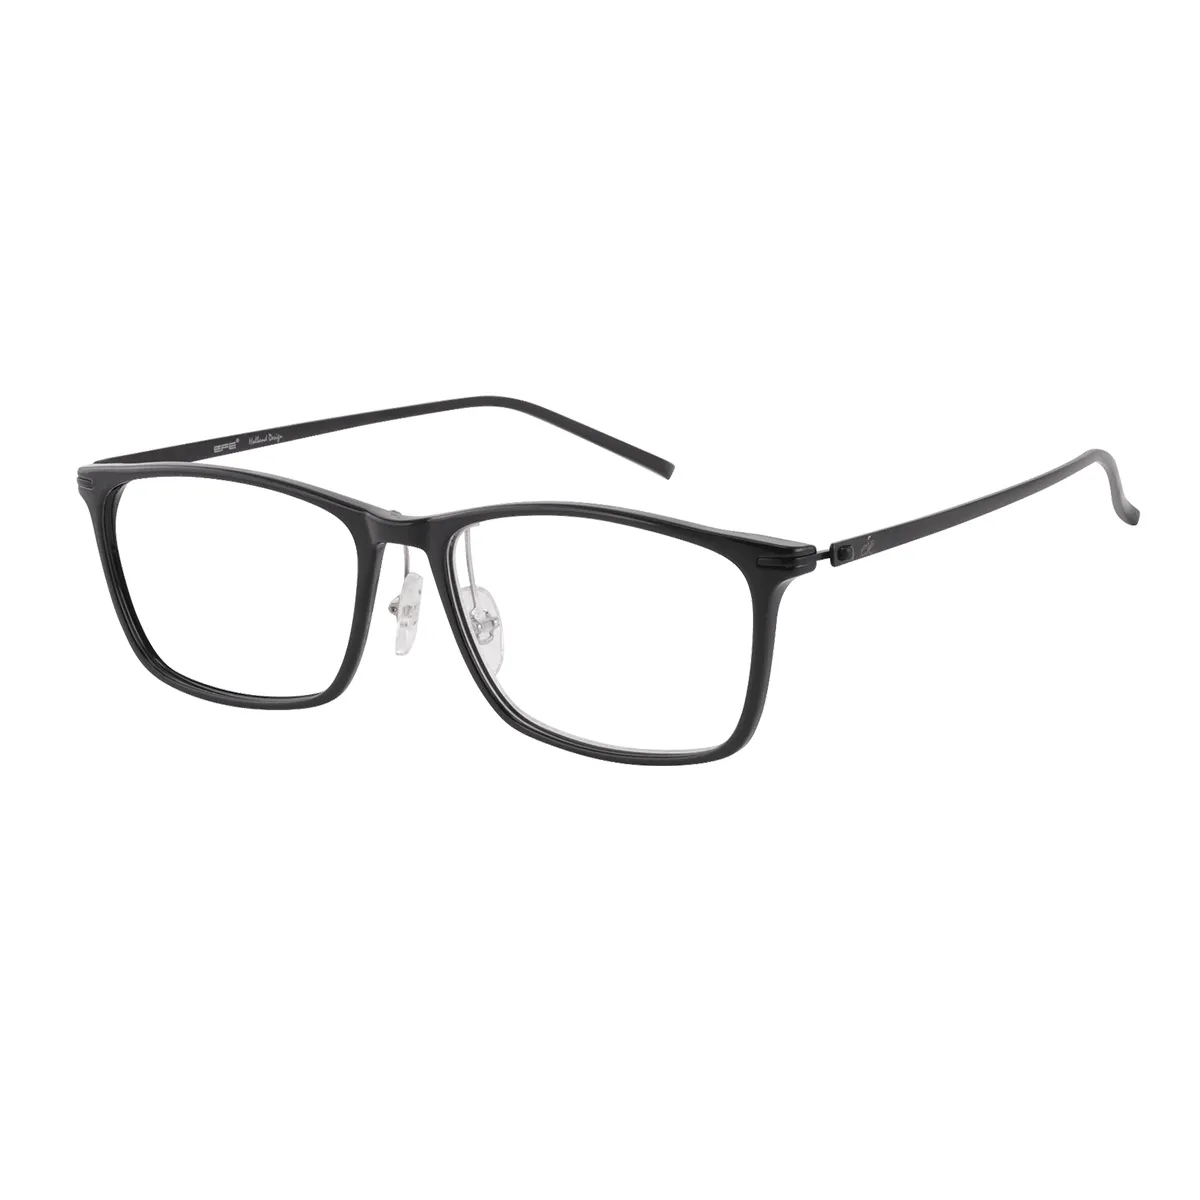 Classic Rectangle Black Glasses for Men & Women